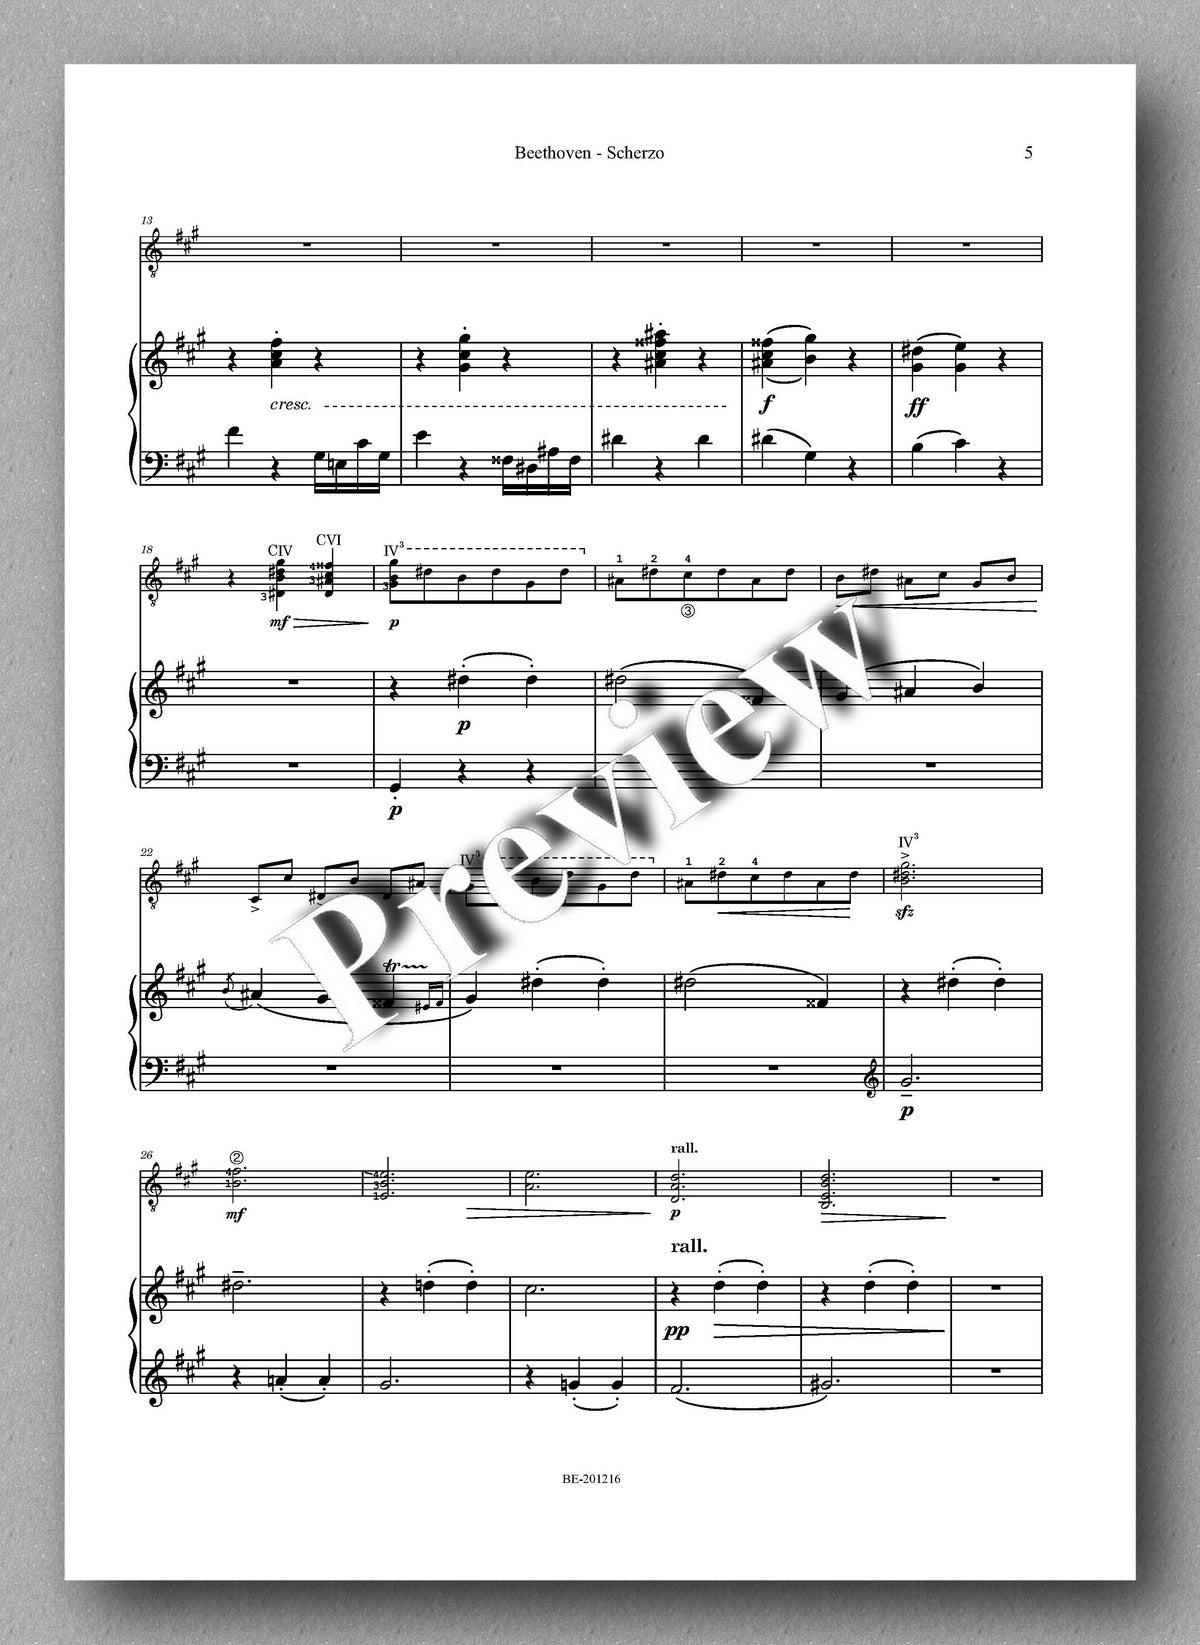 Rebay [154], Beethoven’s Scherzo aus der Sonate op. 2 No. 2 - Full Score 2